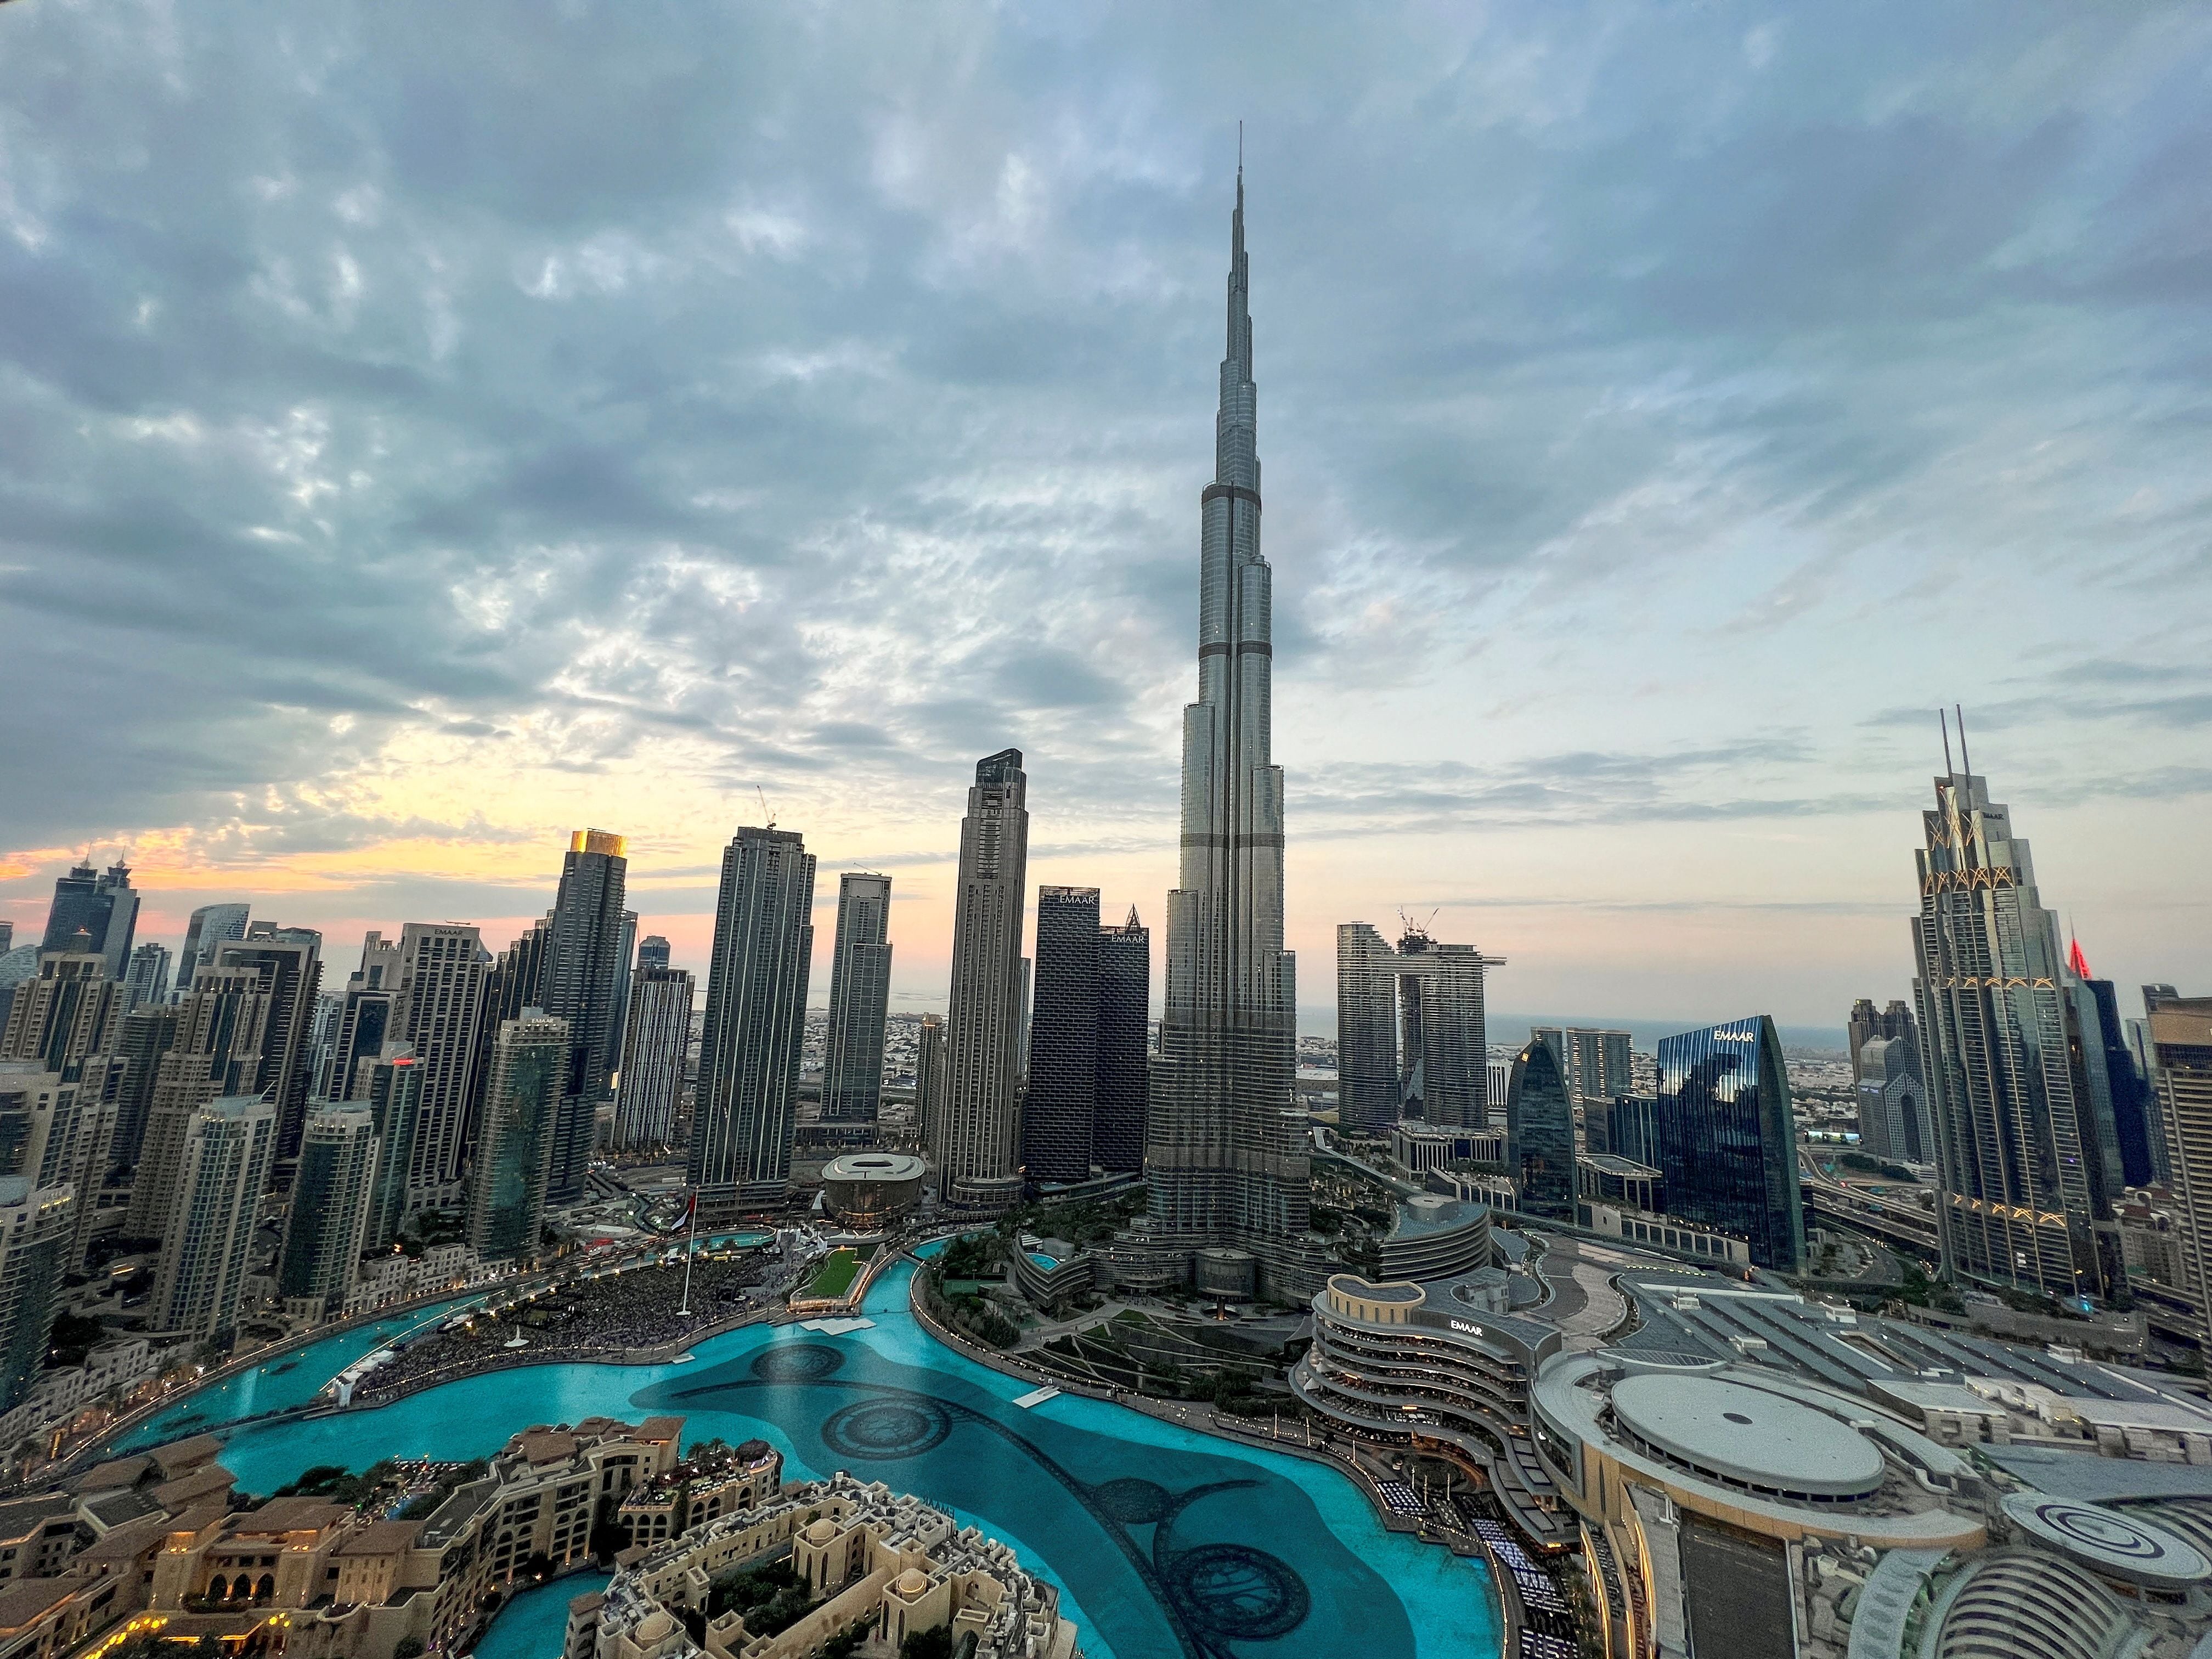 Vista general del centro de Dubái que muestra el edificio más alto del mundo, Burj Khalifa, en Dubái, Emiratos Árabes Unidos. El acero fue clave para edificar su estructura super resistente 
(Foto: REUTERS/Abdelhadi Ramahi)